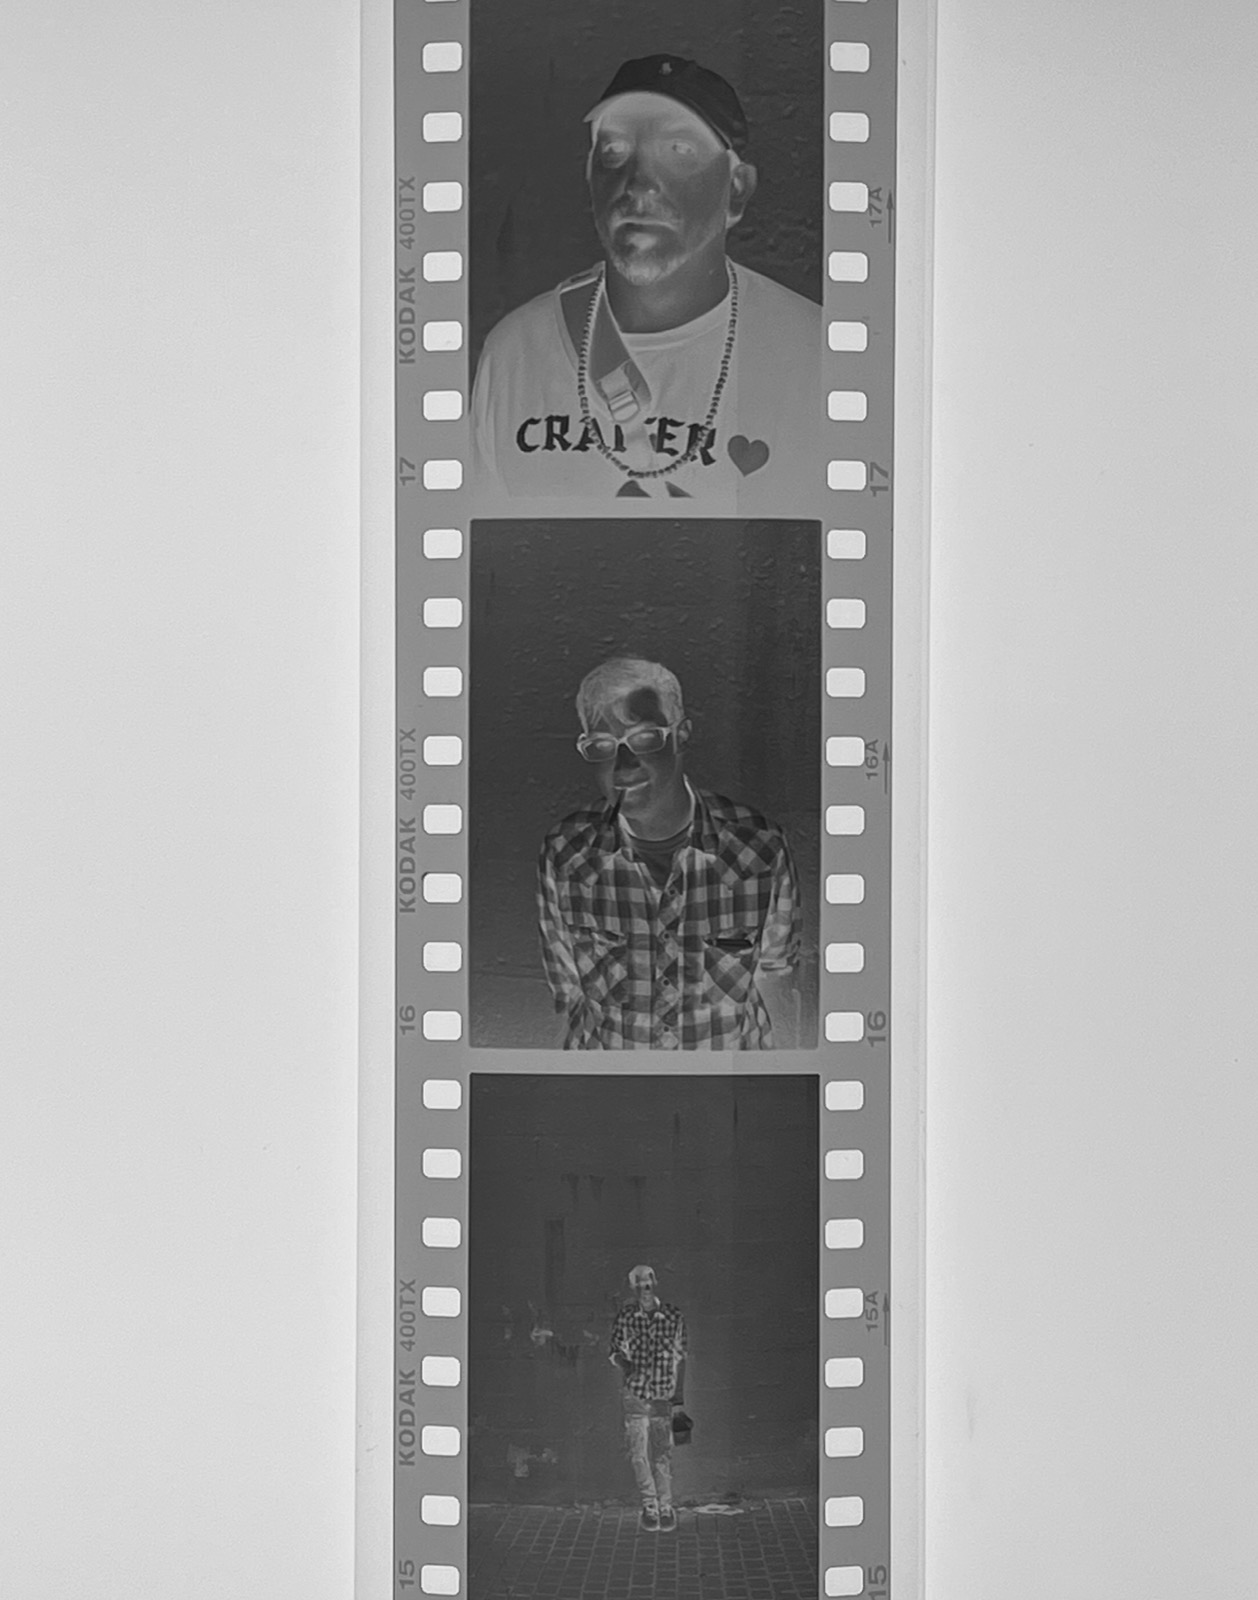 35mm negative on Kodak Tri-X 400